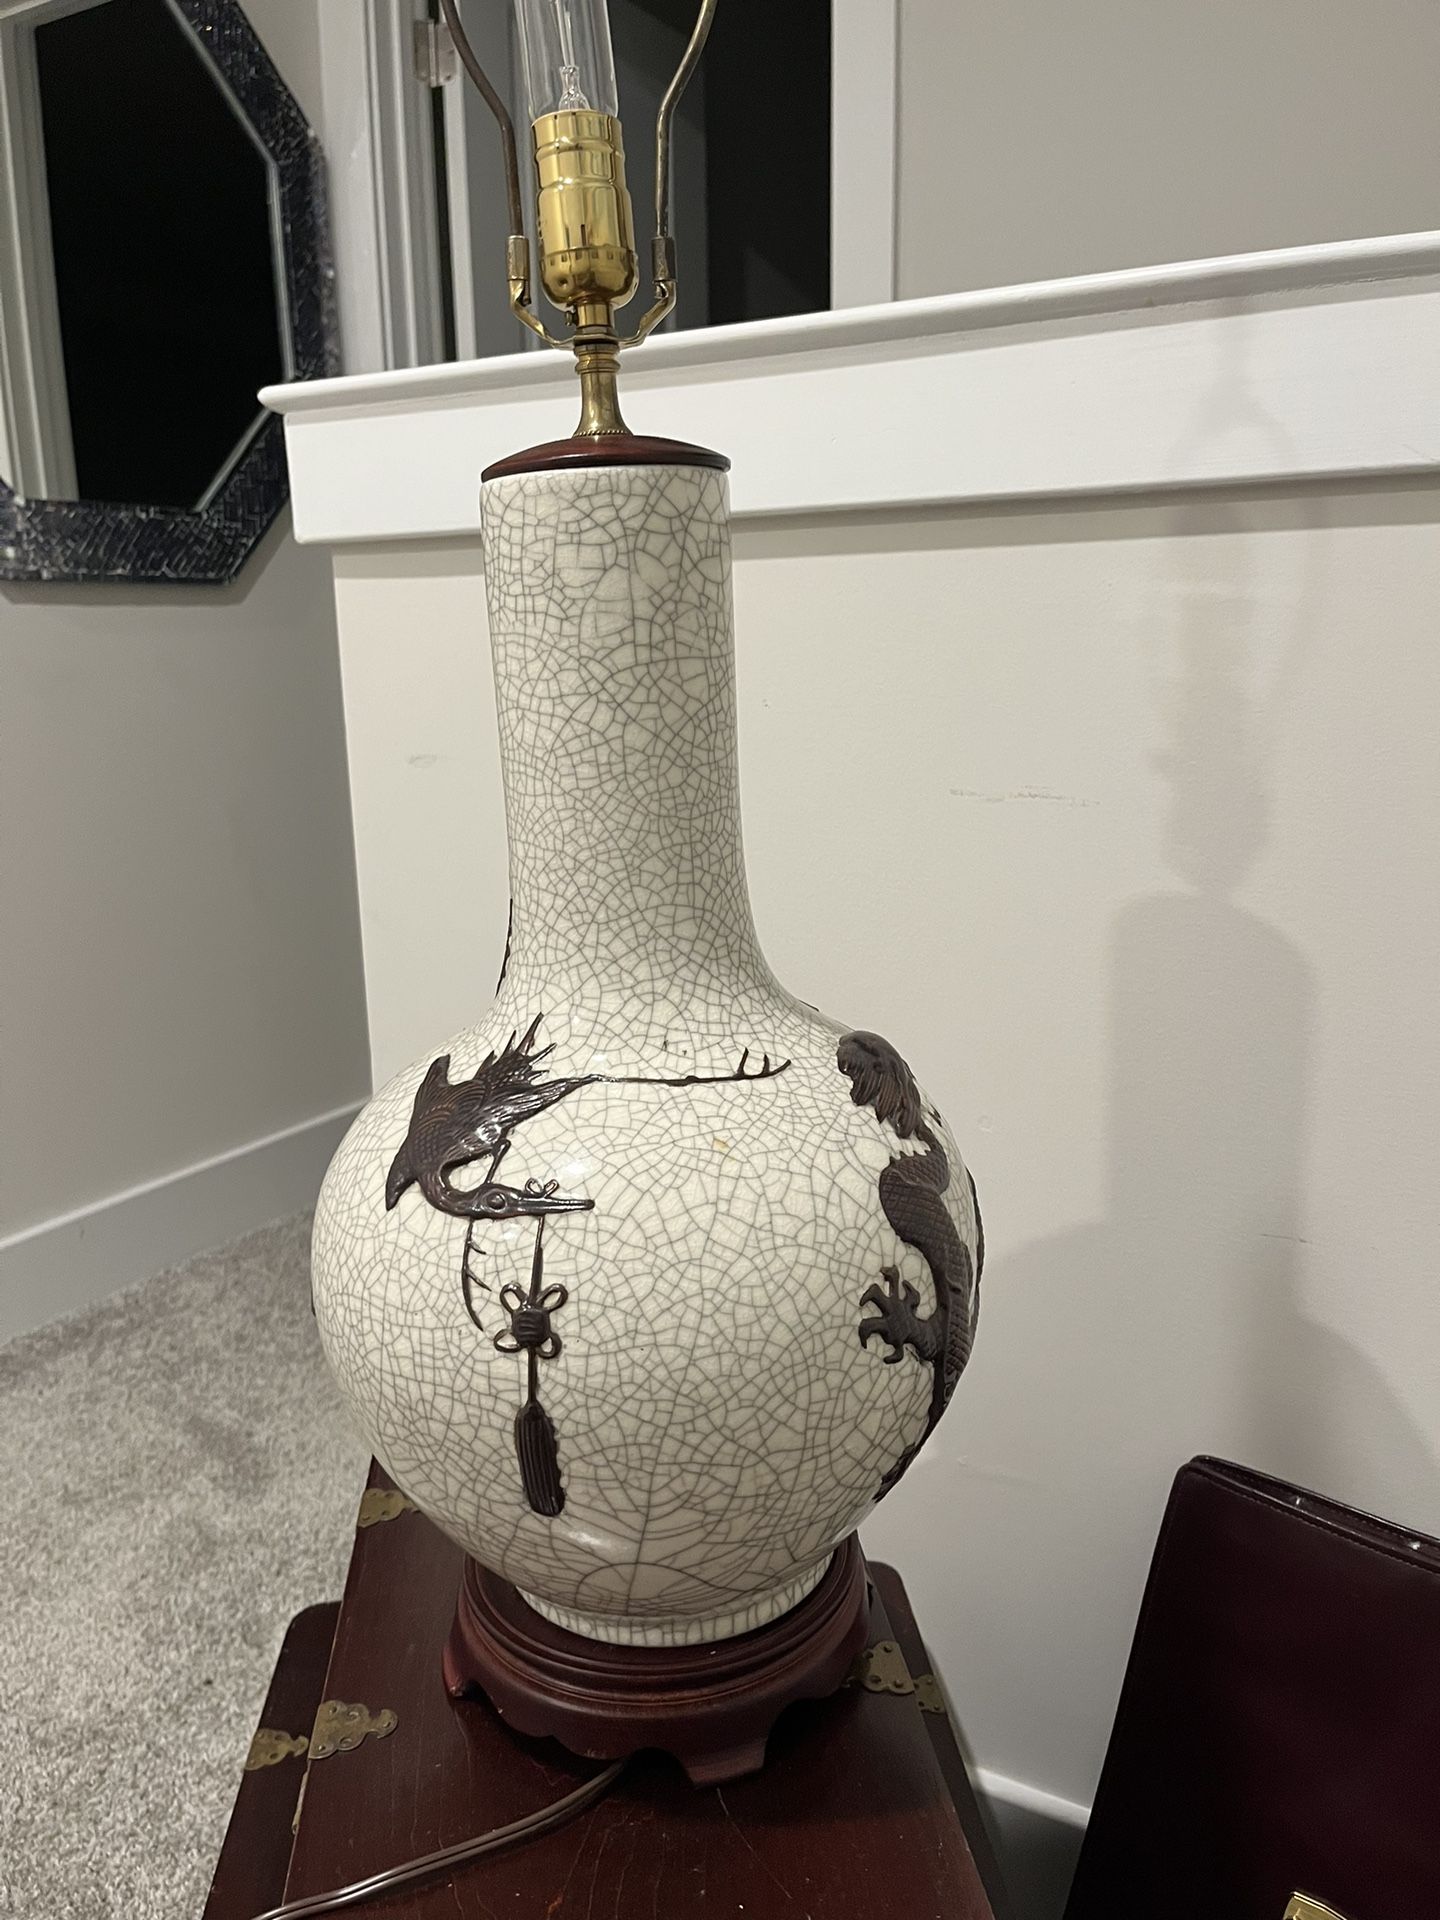 19th Century Chinese Porcelain Vase Turned Lamp